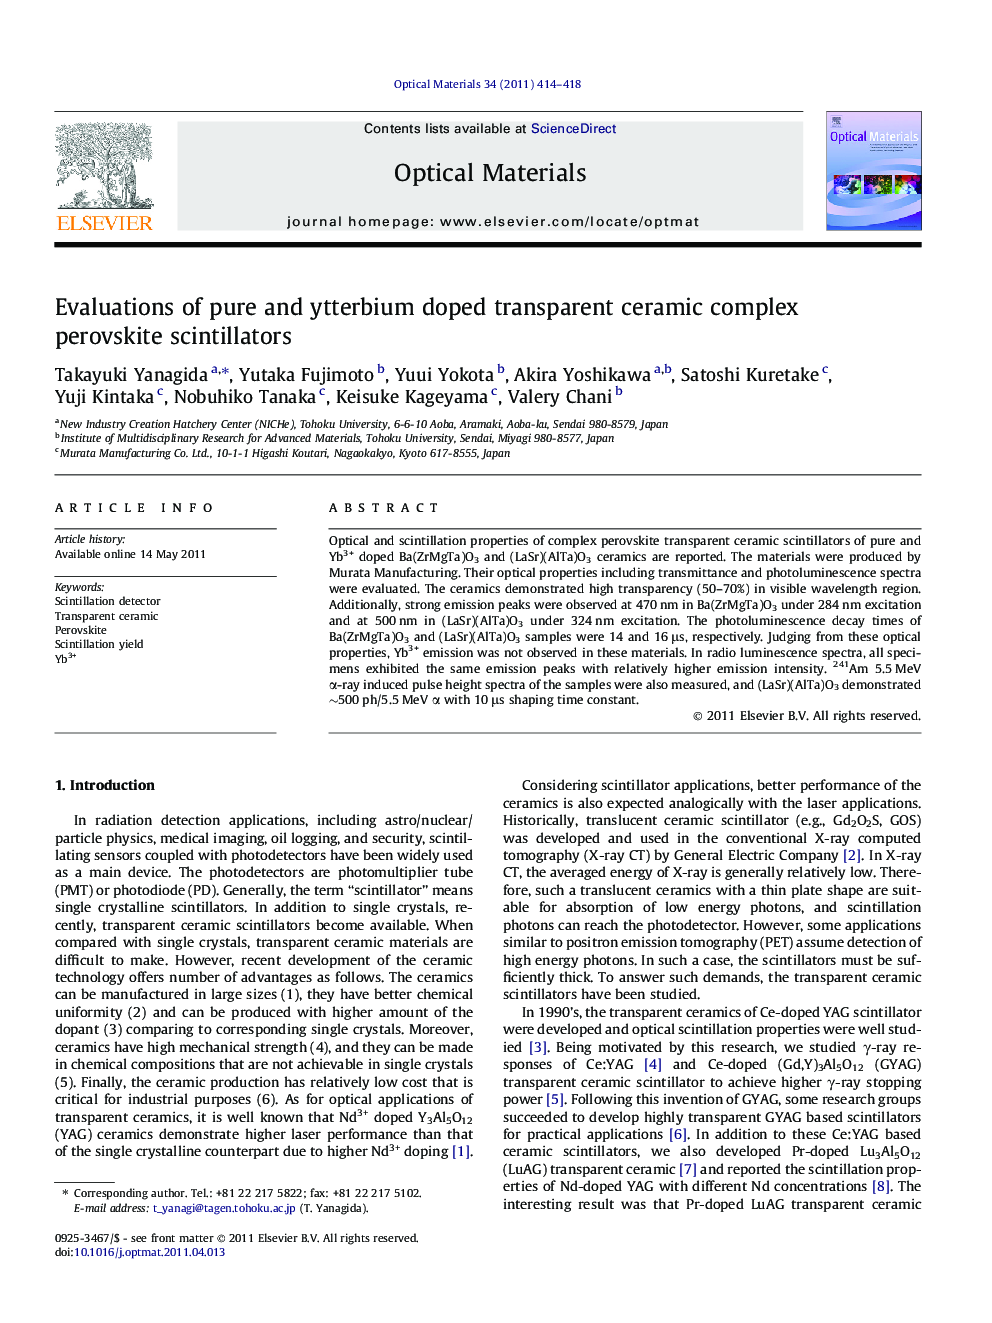 Evaluations of pure and ytterbium doped transparent ceramic complex perovskite scintillators